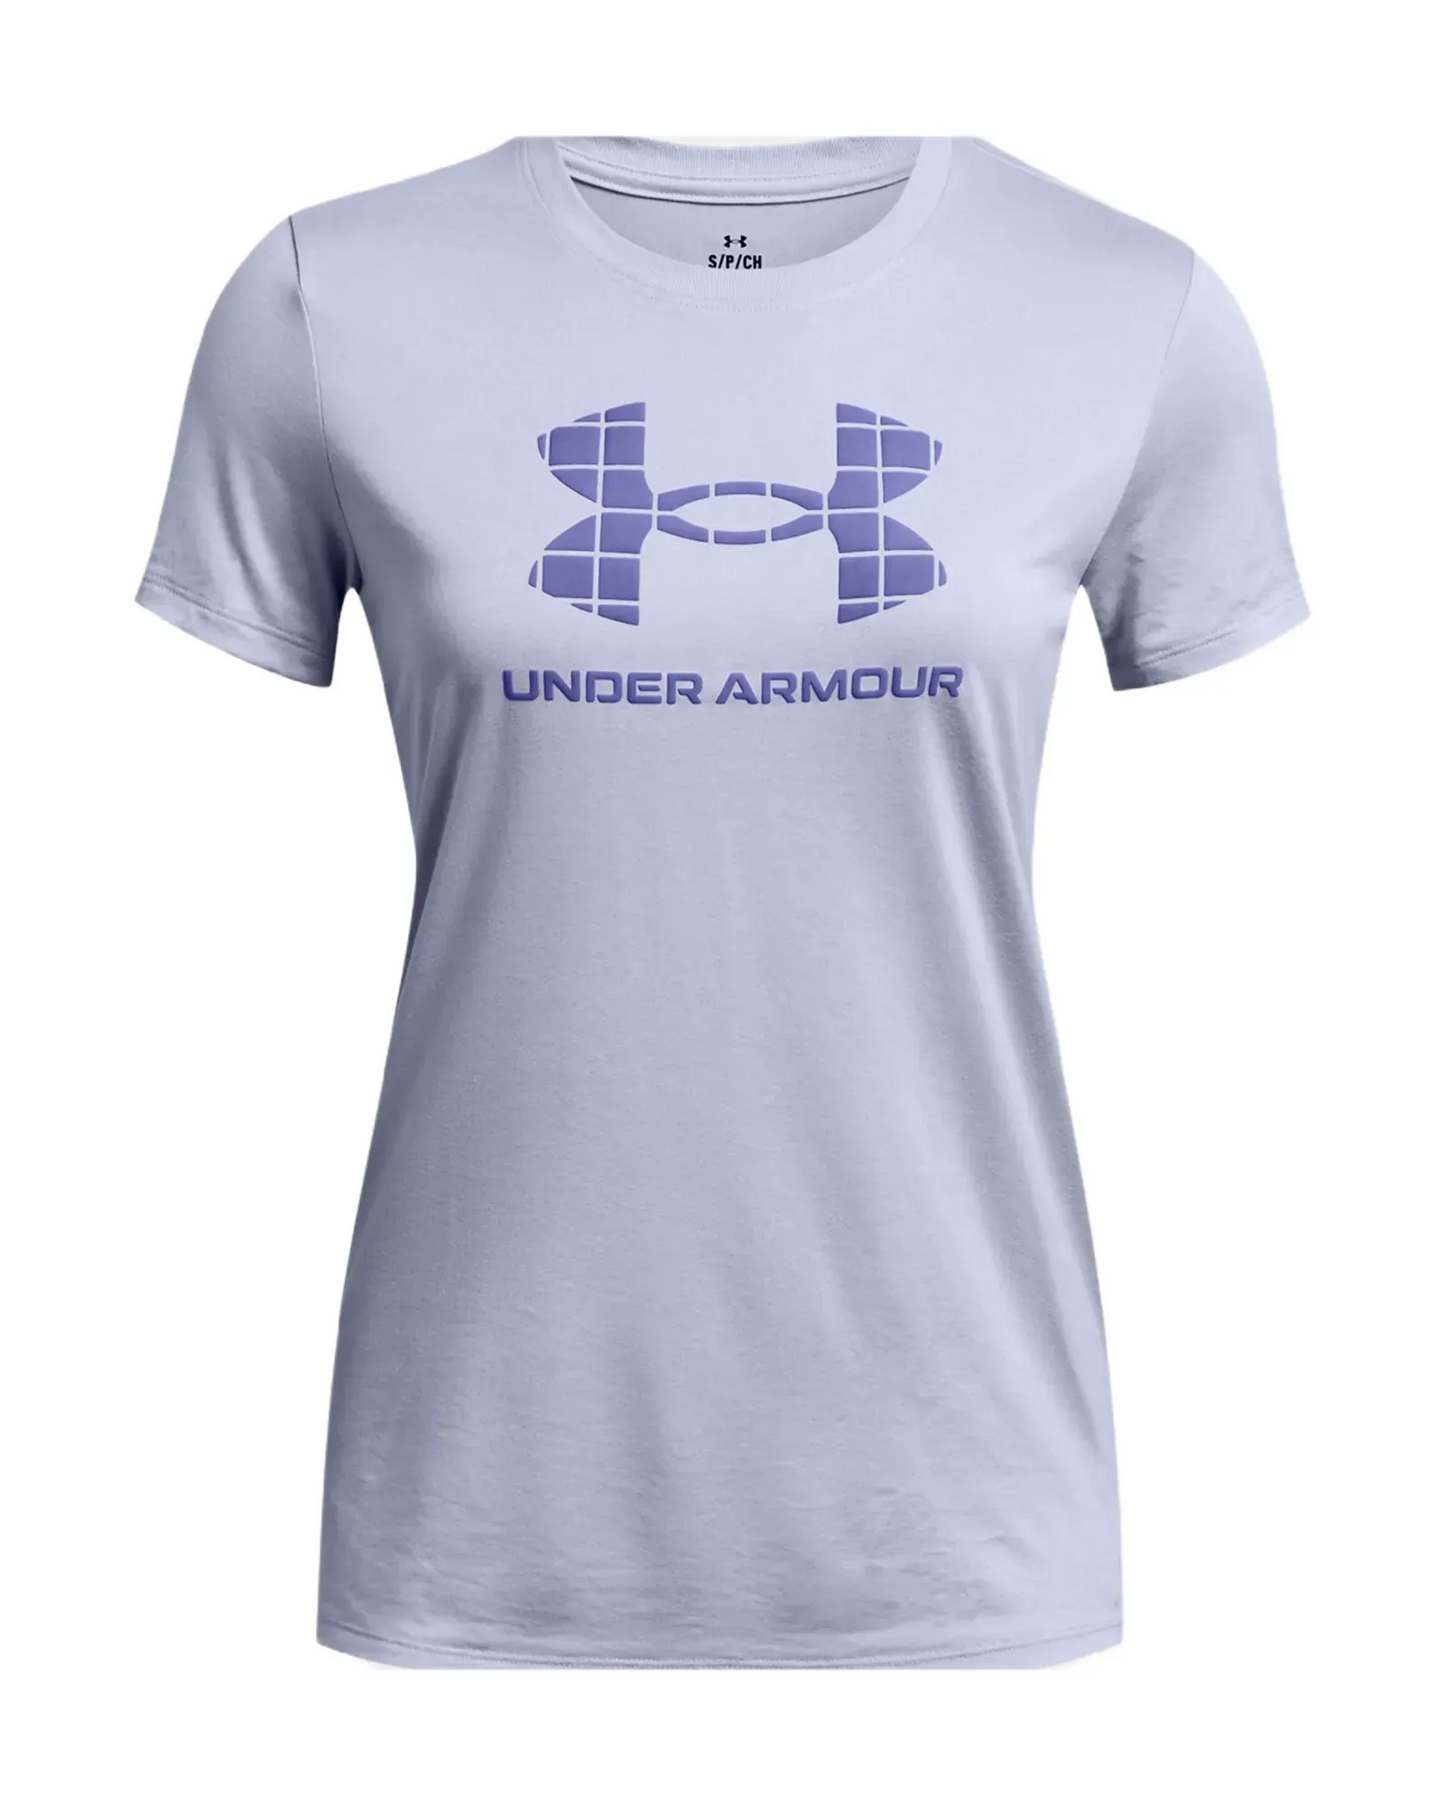 T-shirt mauve - Under Armour